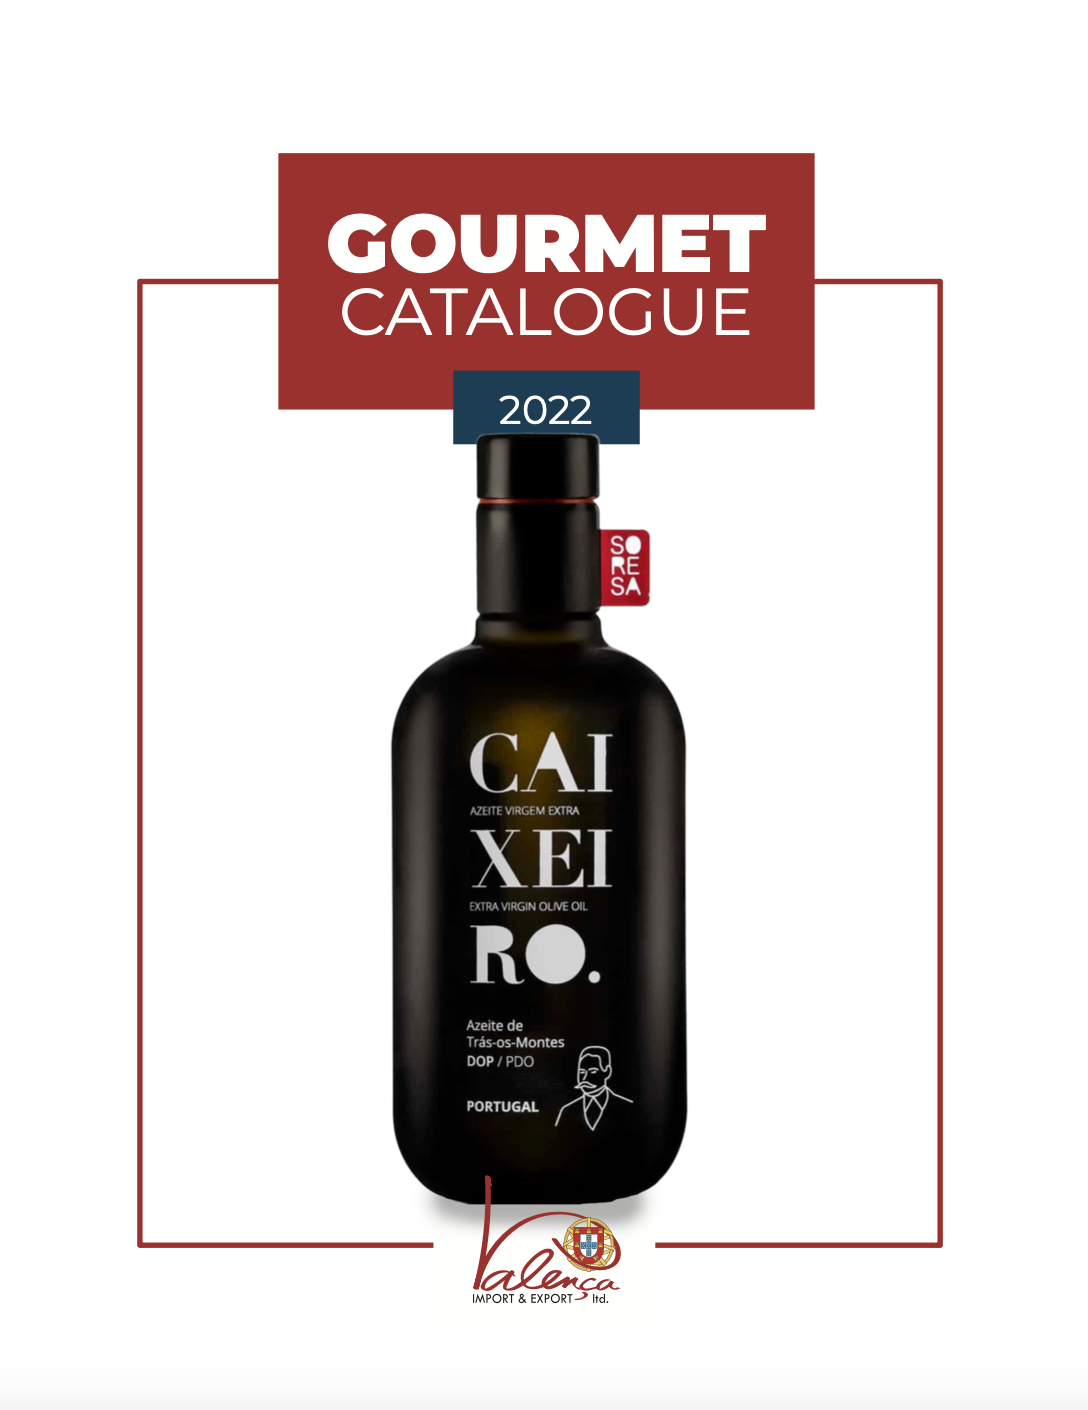 Gourmet Catalogue 2022